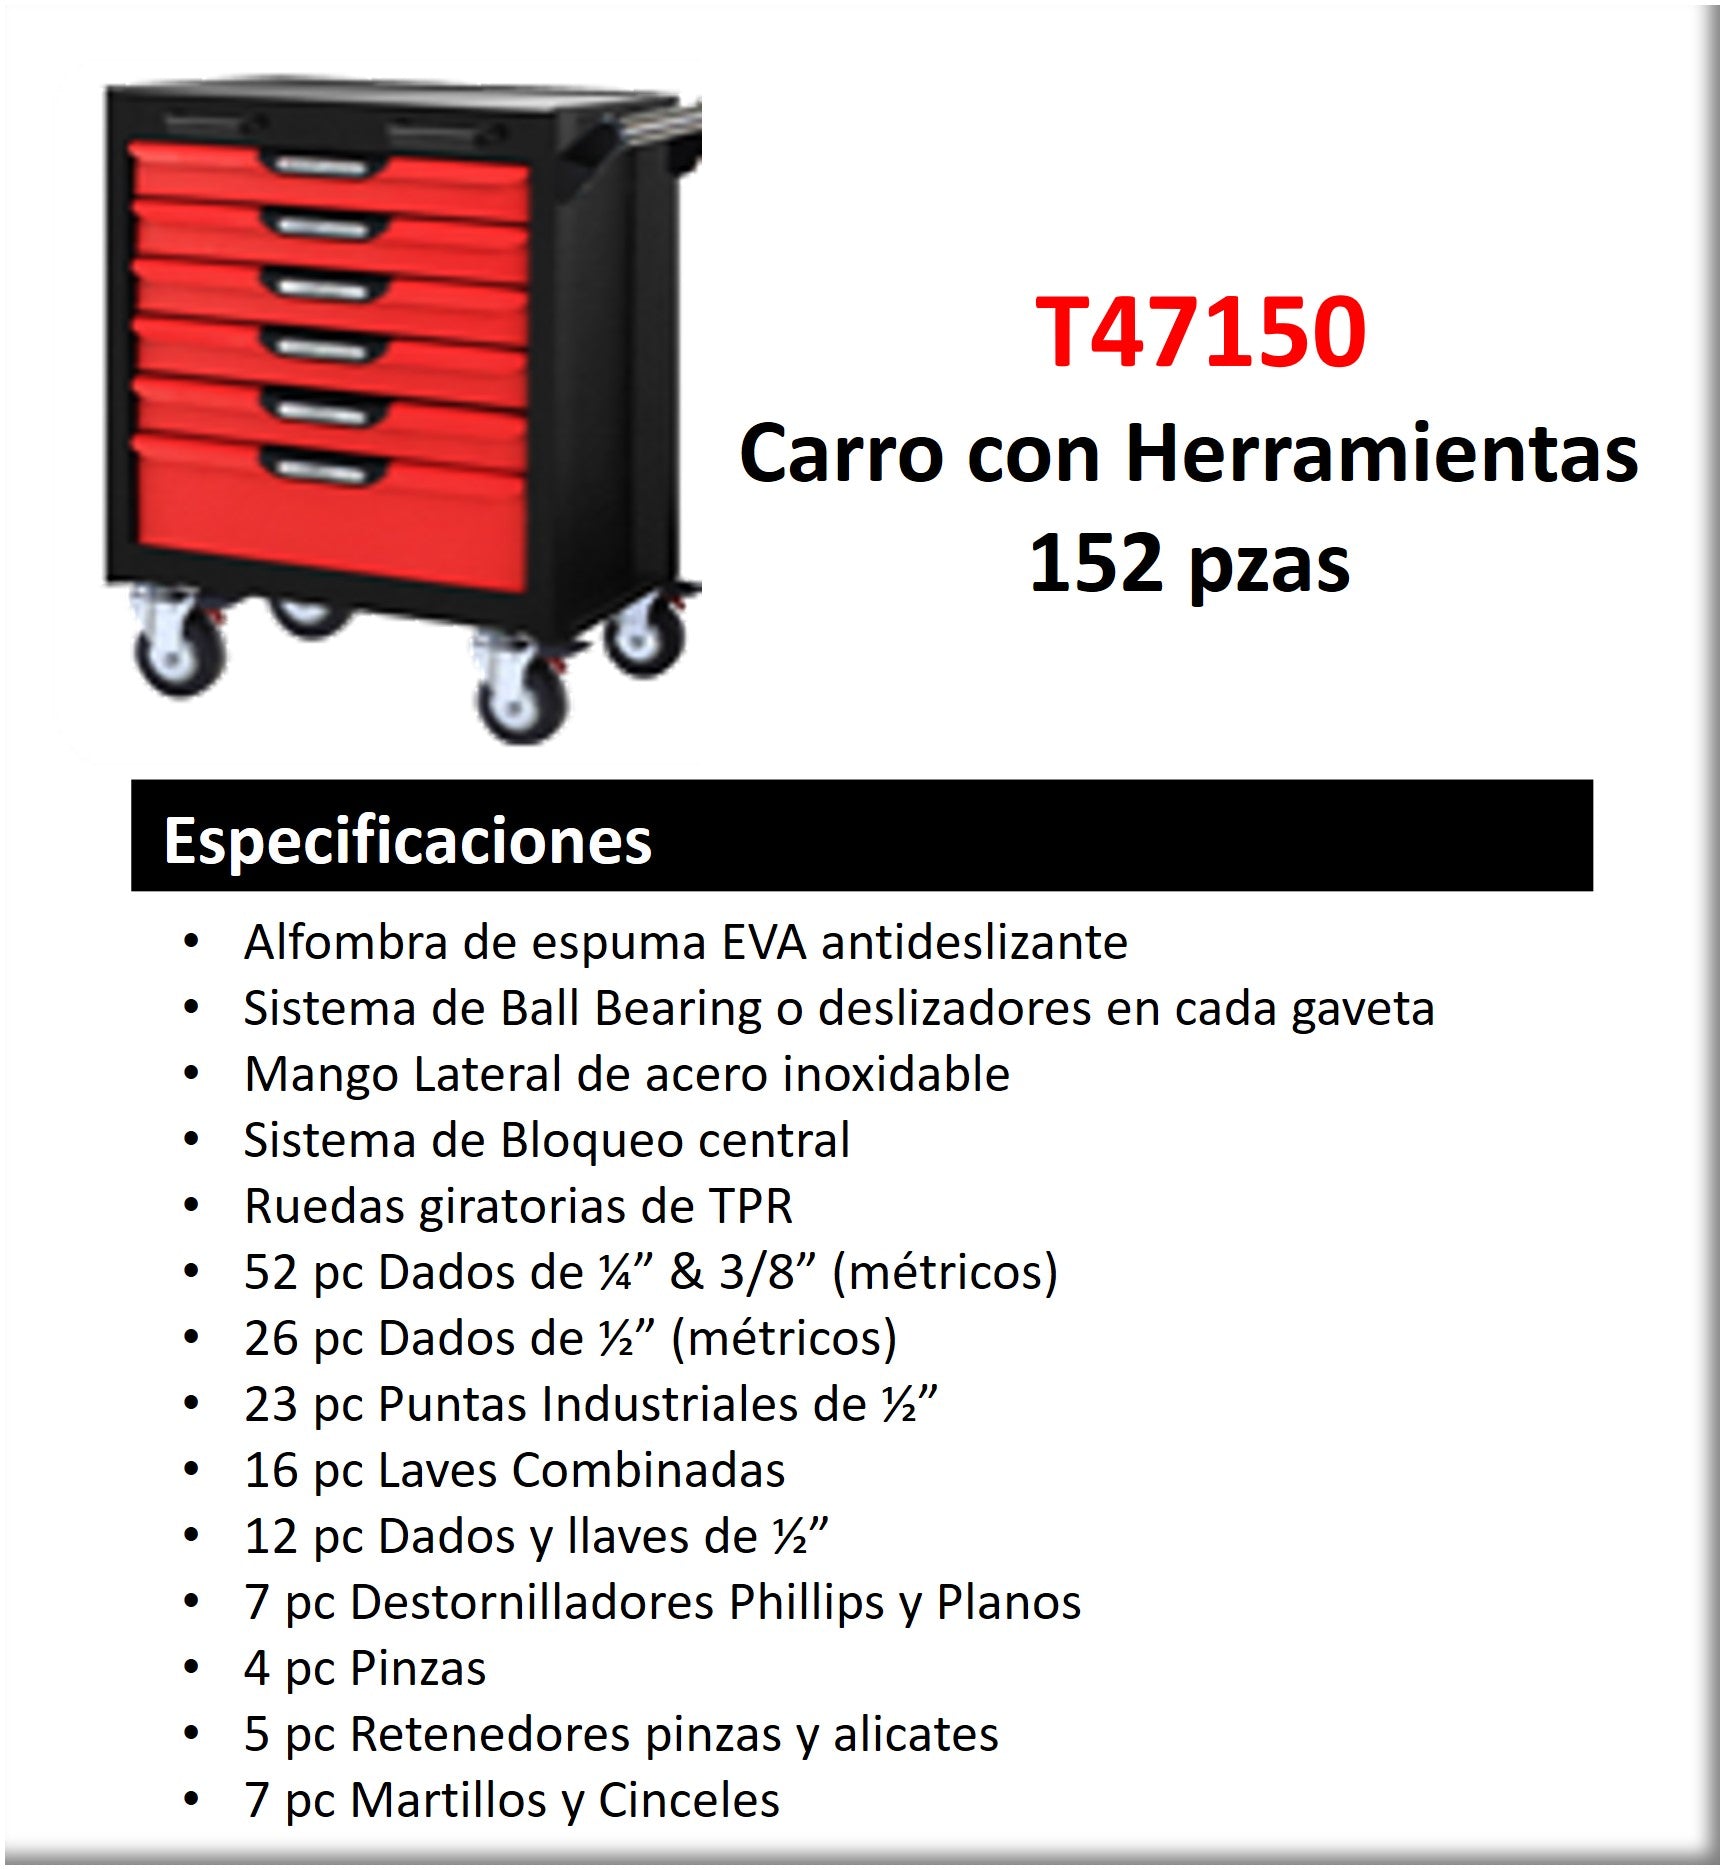 CARRO CON HERRAMIENTAS 152 PZS 6 GAVETAS DADOS Y LLAVES EN MM Y HERRAMIENTA GENERAL